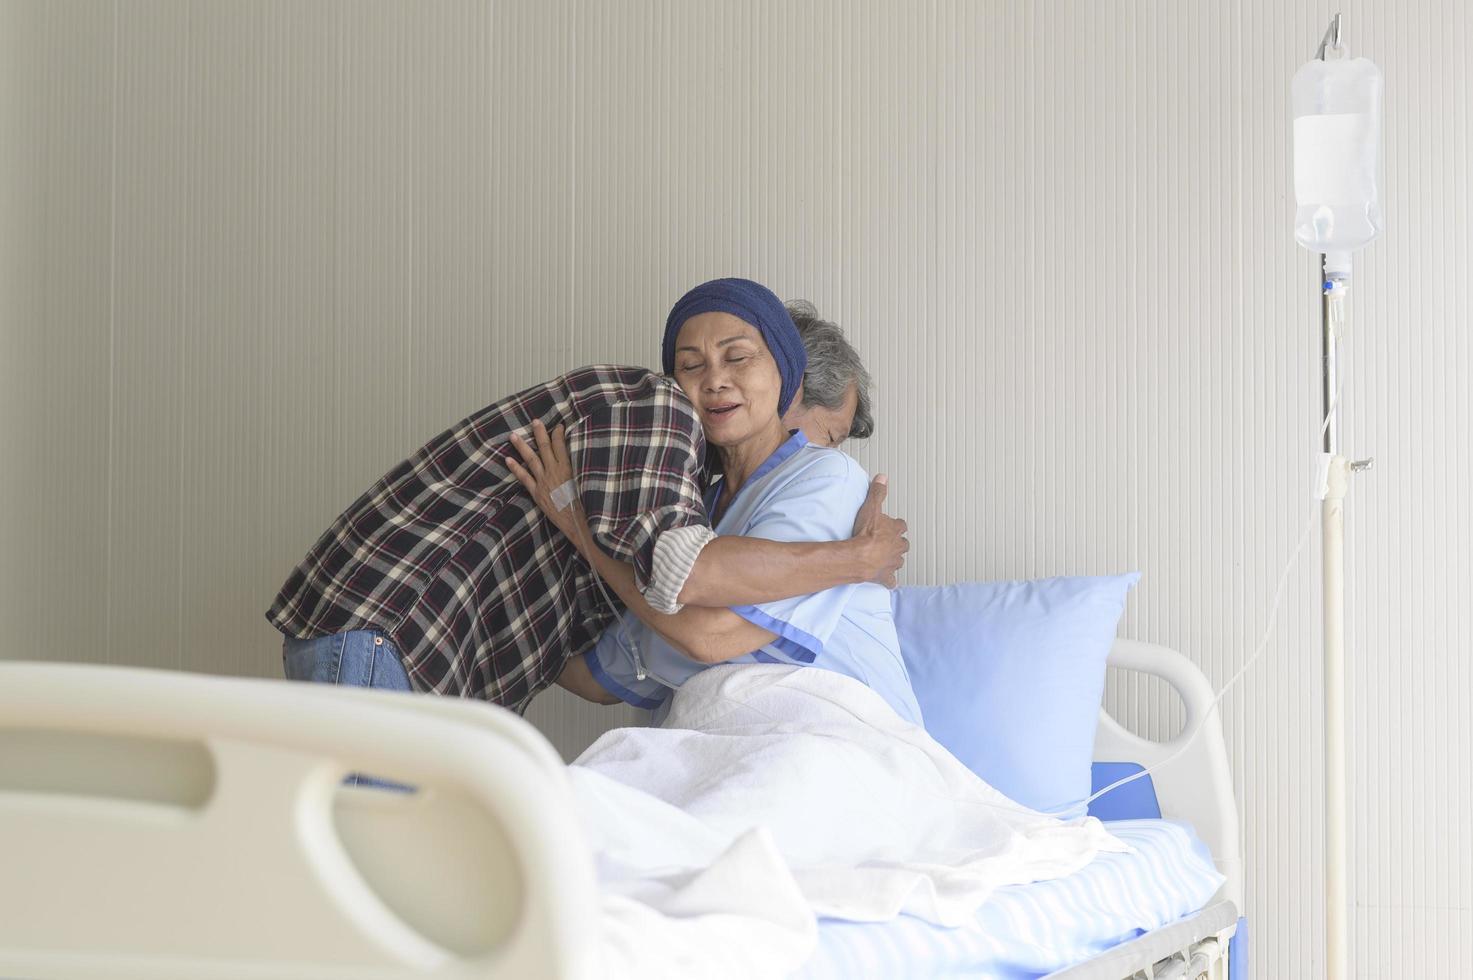 anciano visitando a una paciente con cáncer que usa pañuelo en la cabeza en el hospital, atención médica y concepto médico foto